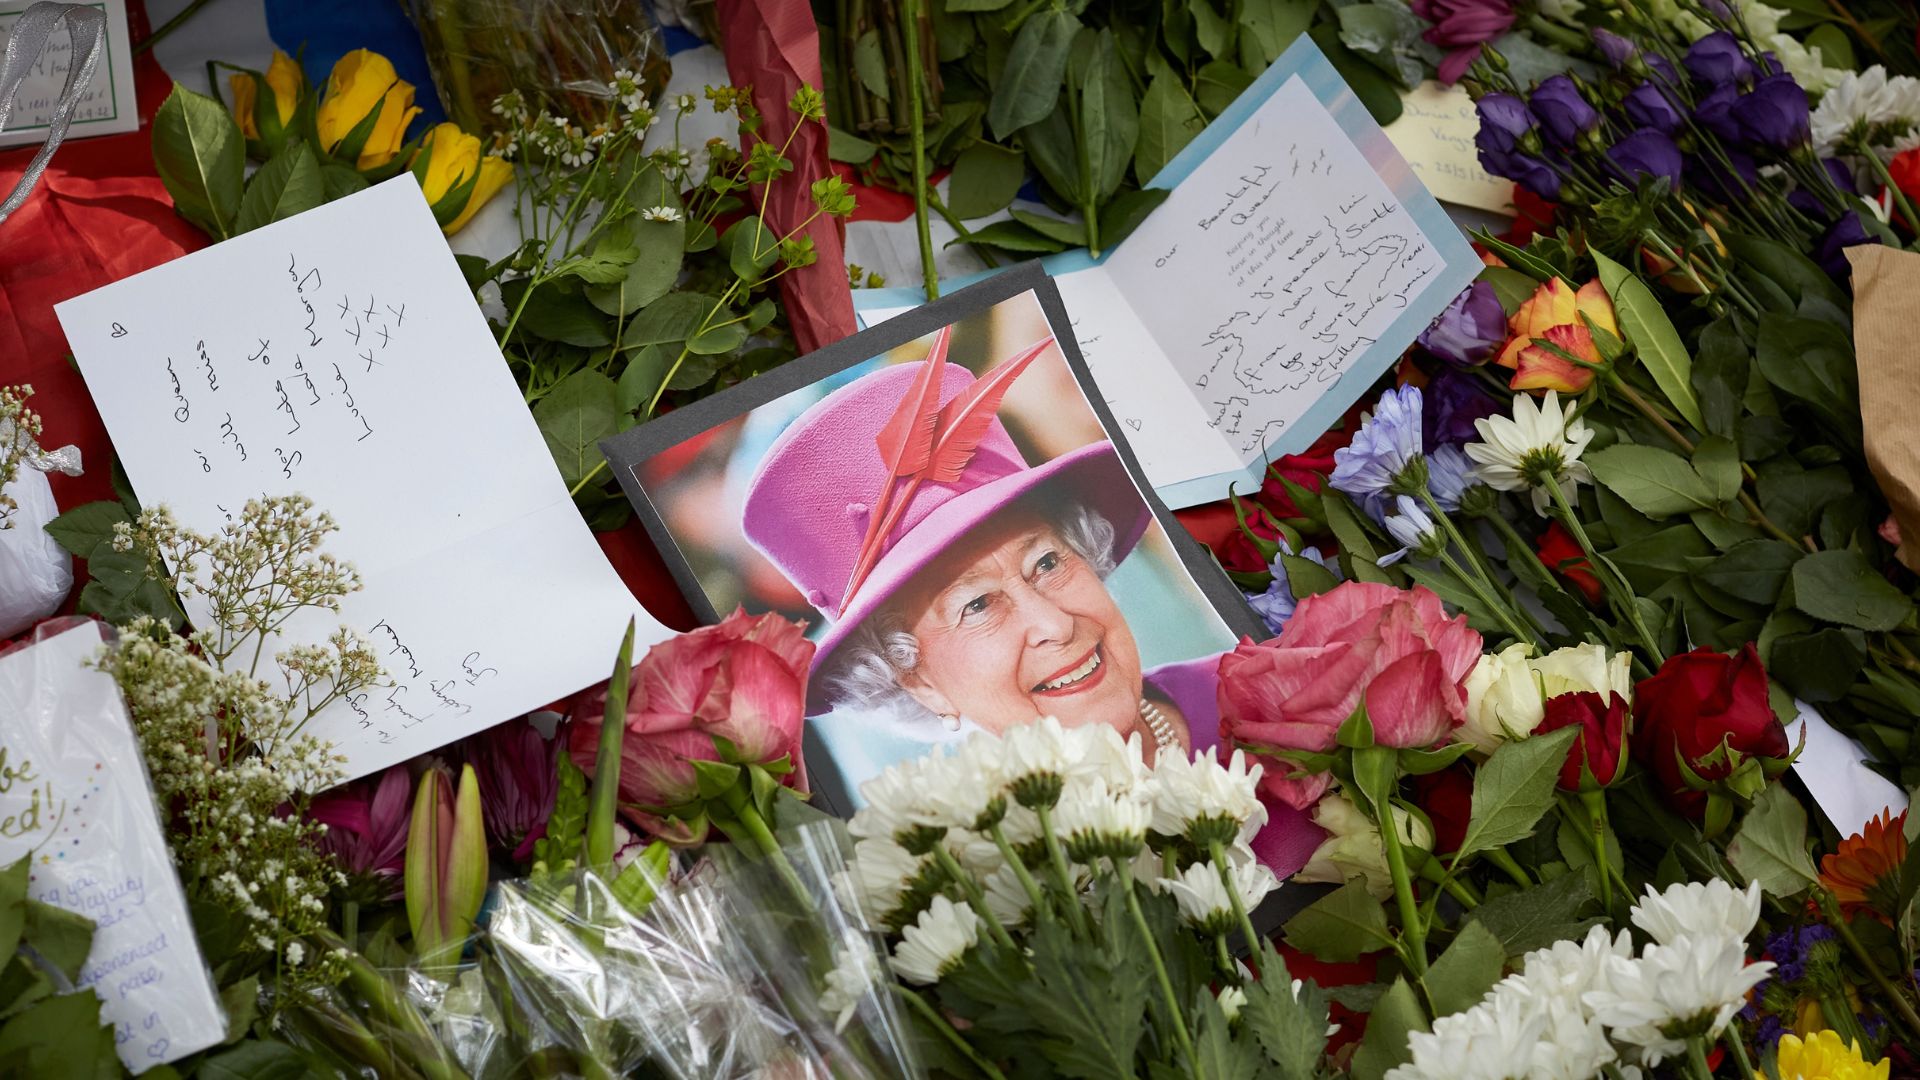 Vivre ailleurs, sur RFI : le décès de la reine Elizabeth II vu par les expatriés français au Royaume-Uni